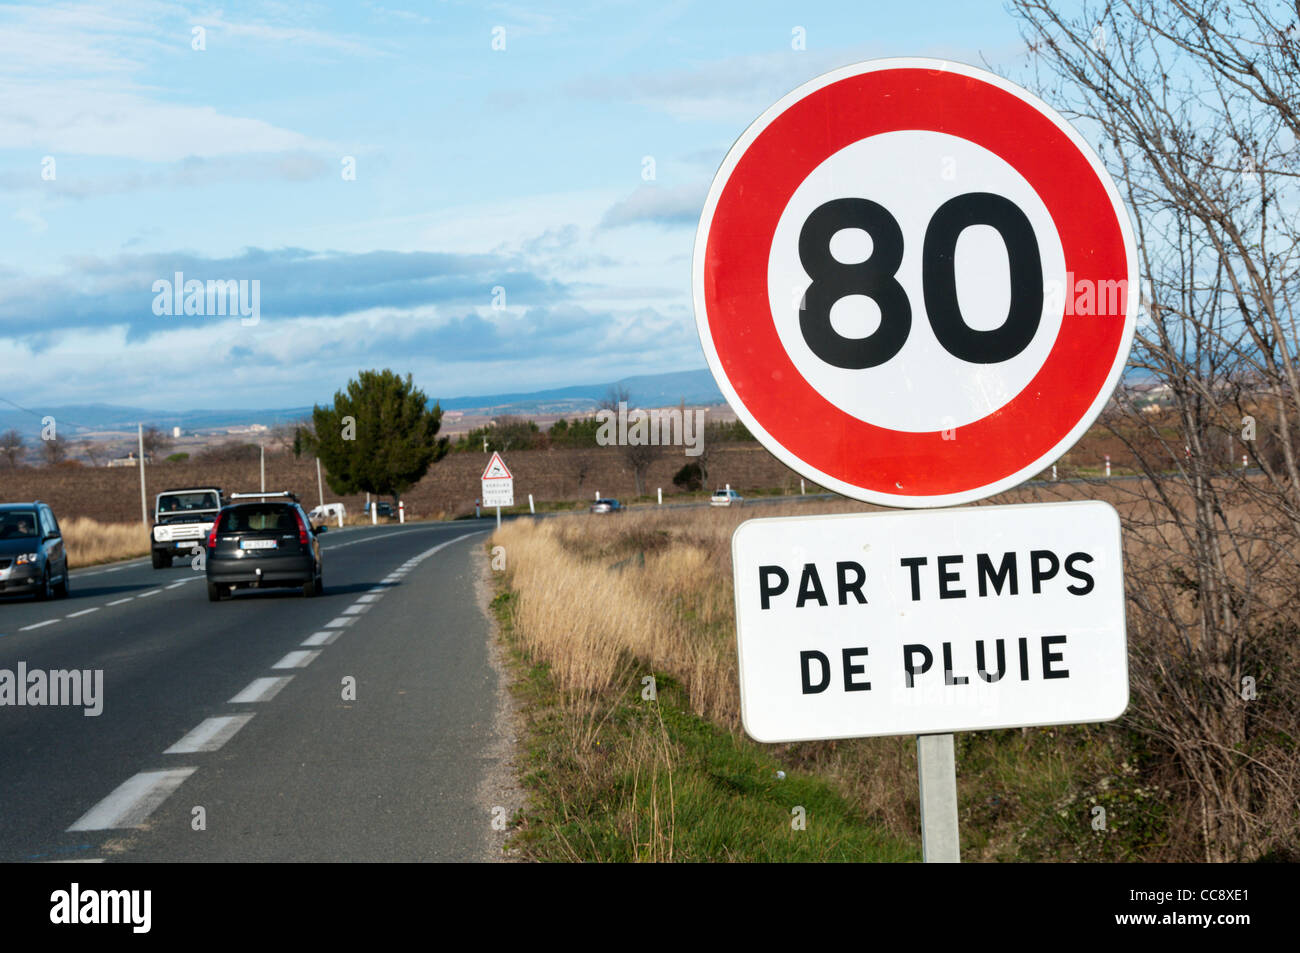 Un roadsign sur la D909 à l'extérieur de Béziers indique que la limite de vitesse est réduite à 80 km/h lorsqu'il pleut. Banque D'Images